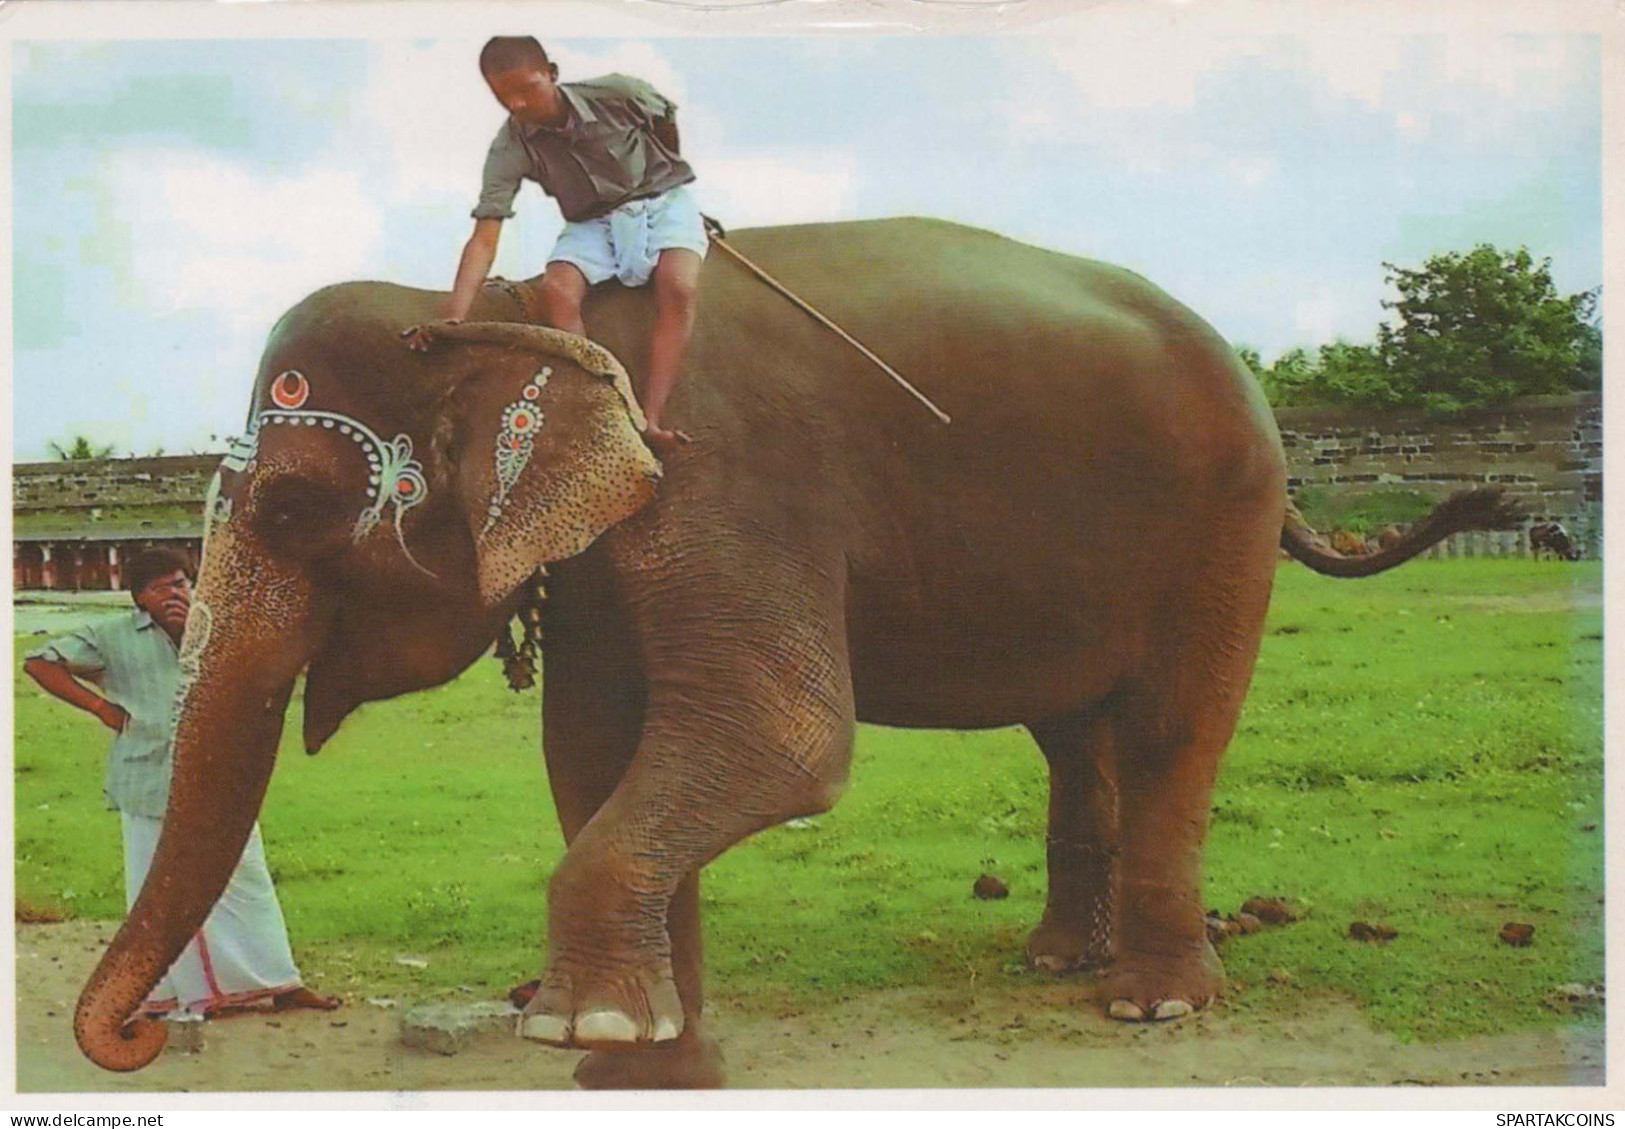 ELEPHANT Animals Vintage Postcard CPSM #PBS746.GB - Éléphants